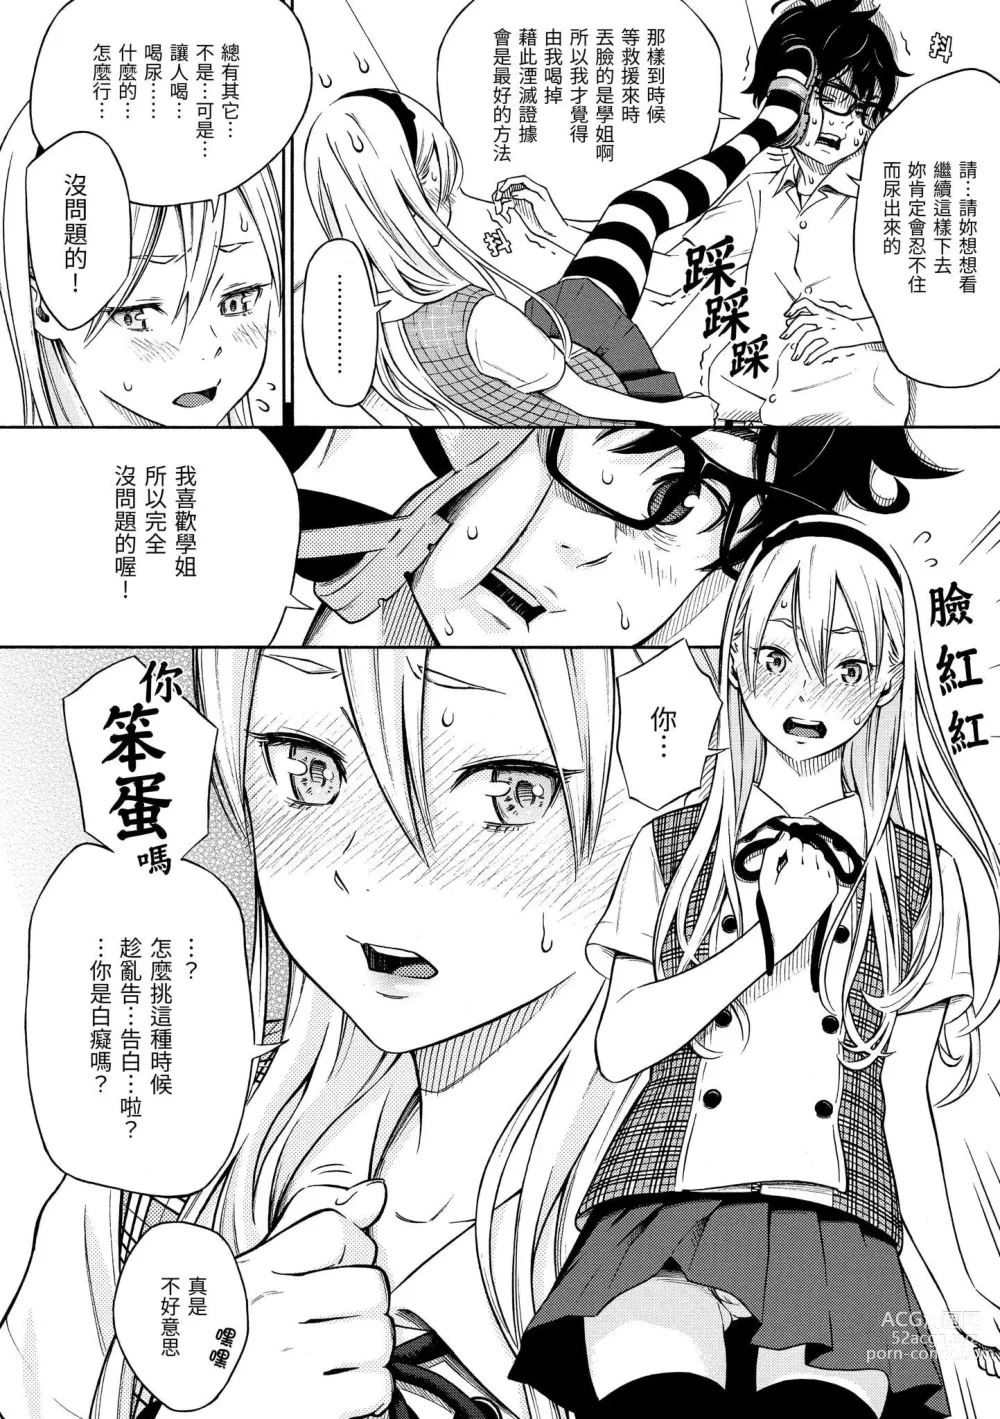 Page 13 of manga 放學後的香草女孩 (decensored)